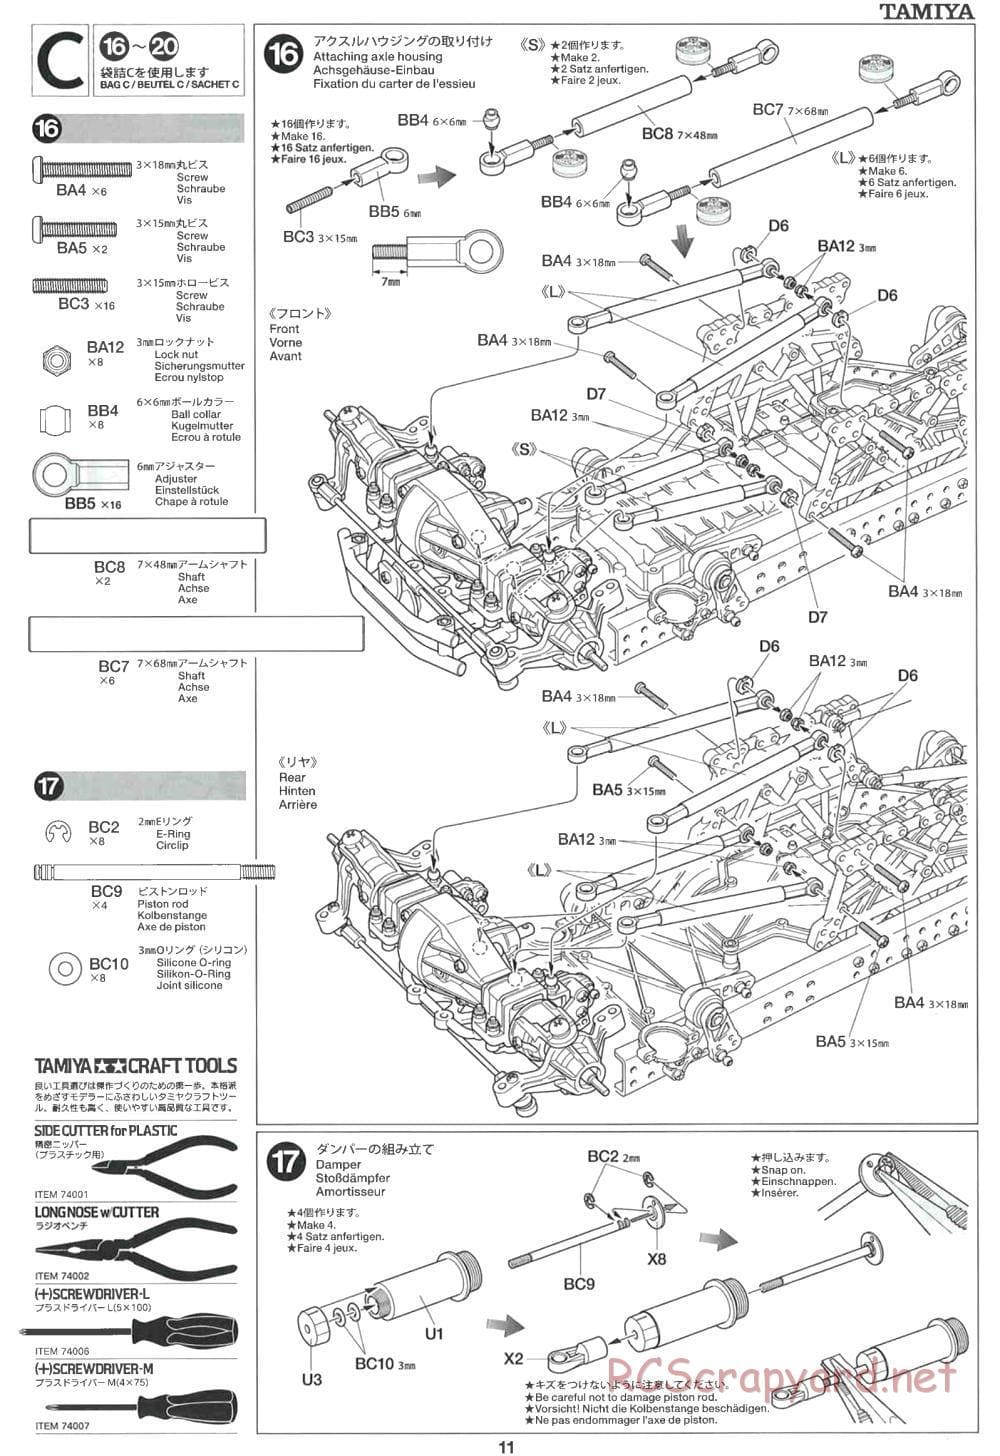 Tamiya - CR-01 Chassis - Manual - Page 11